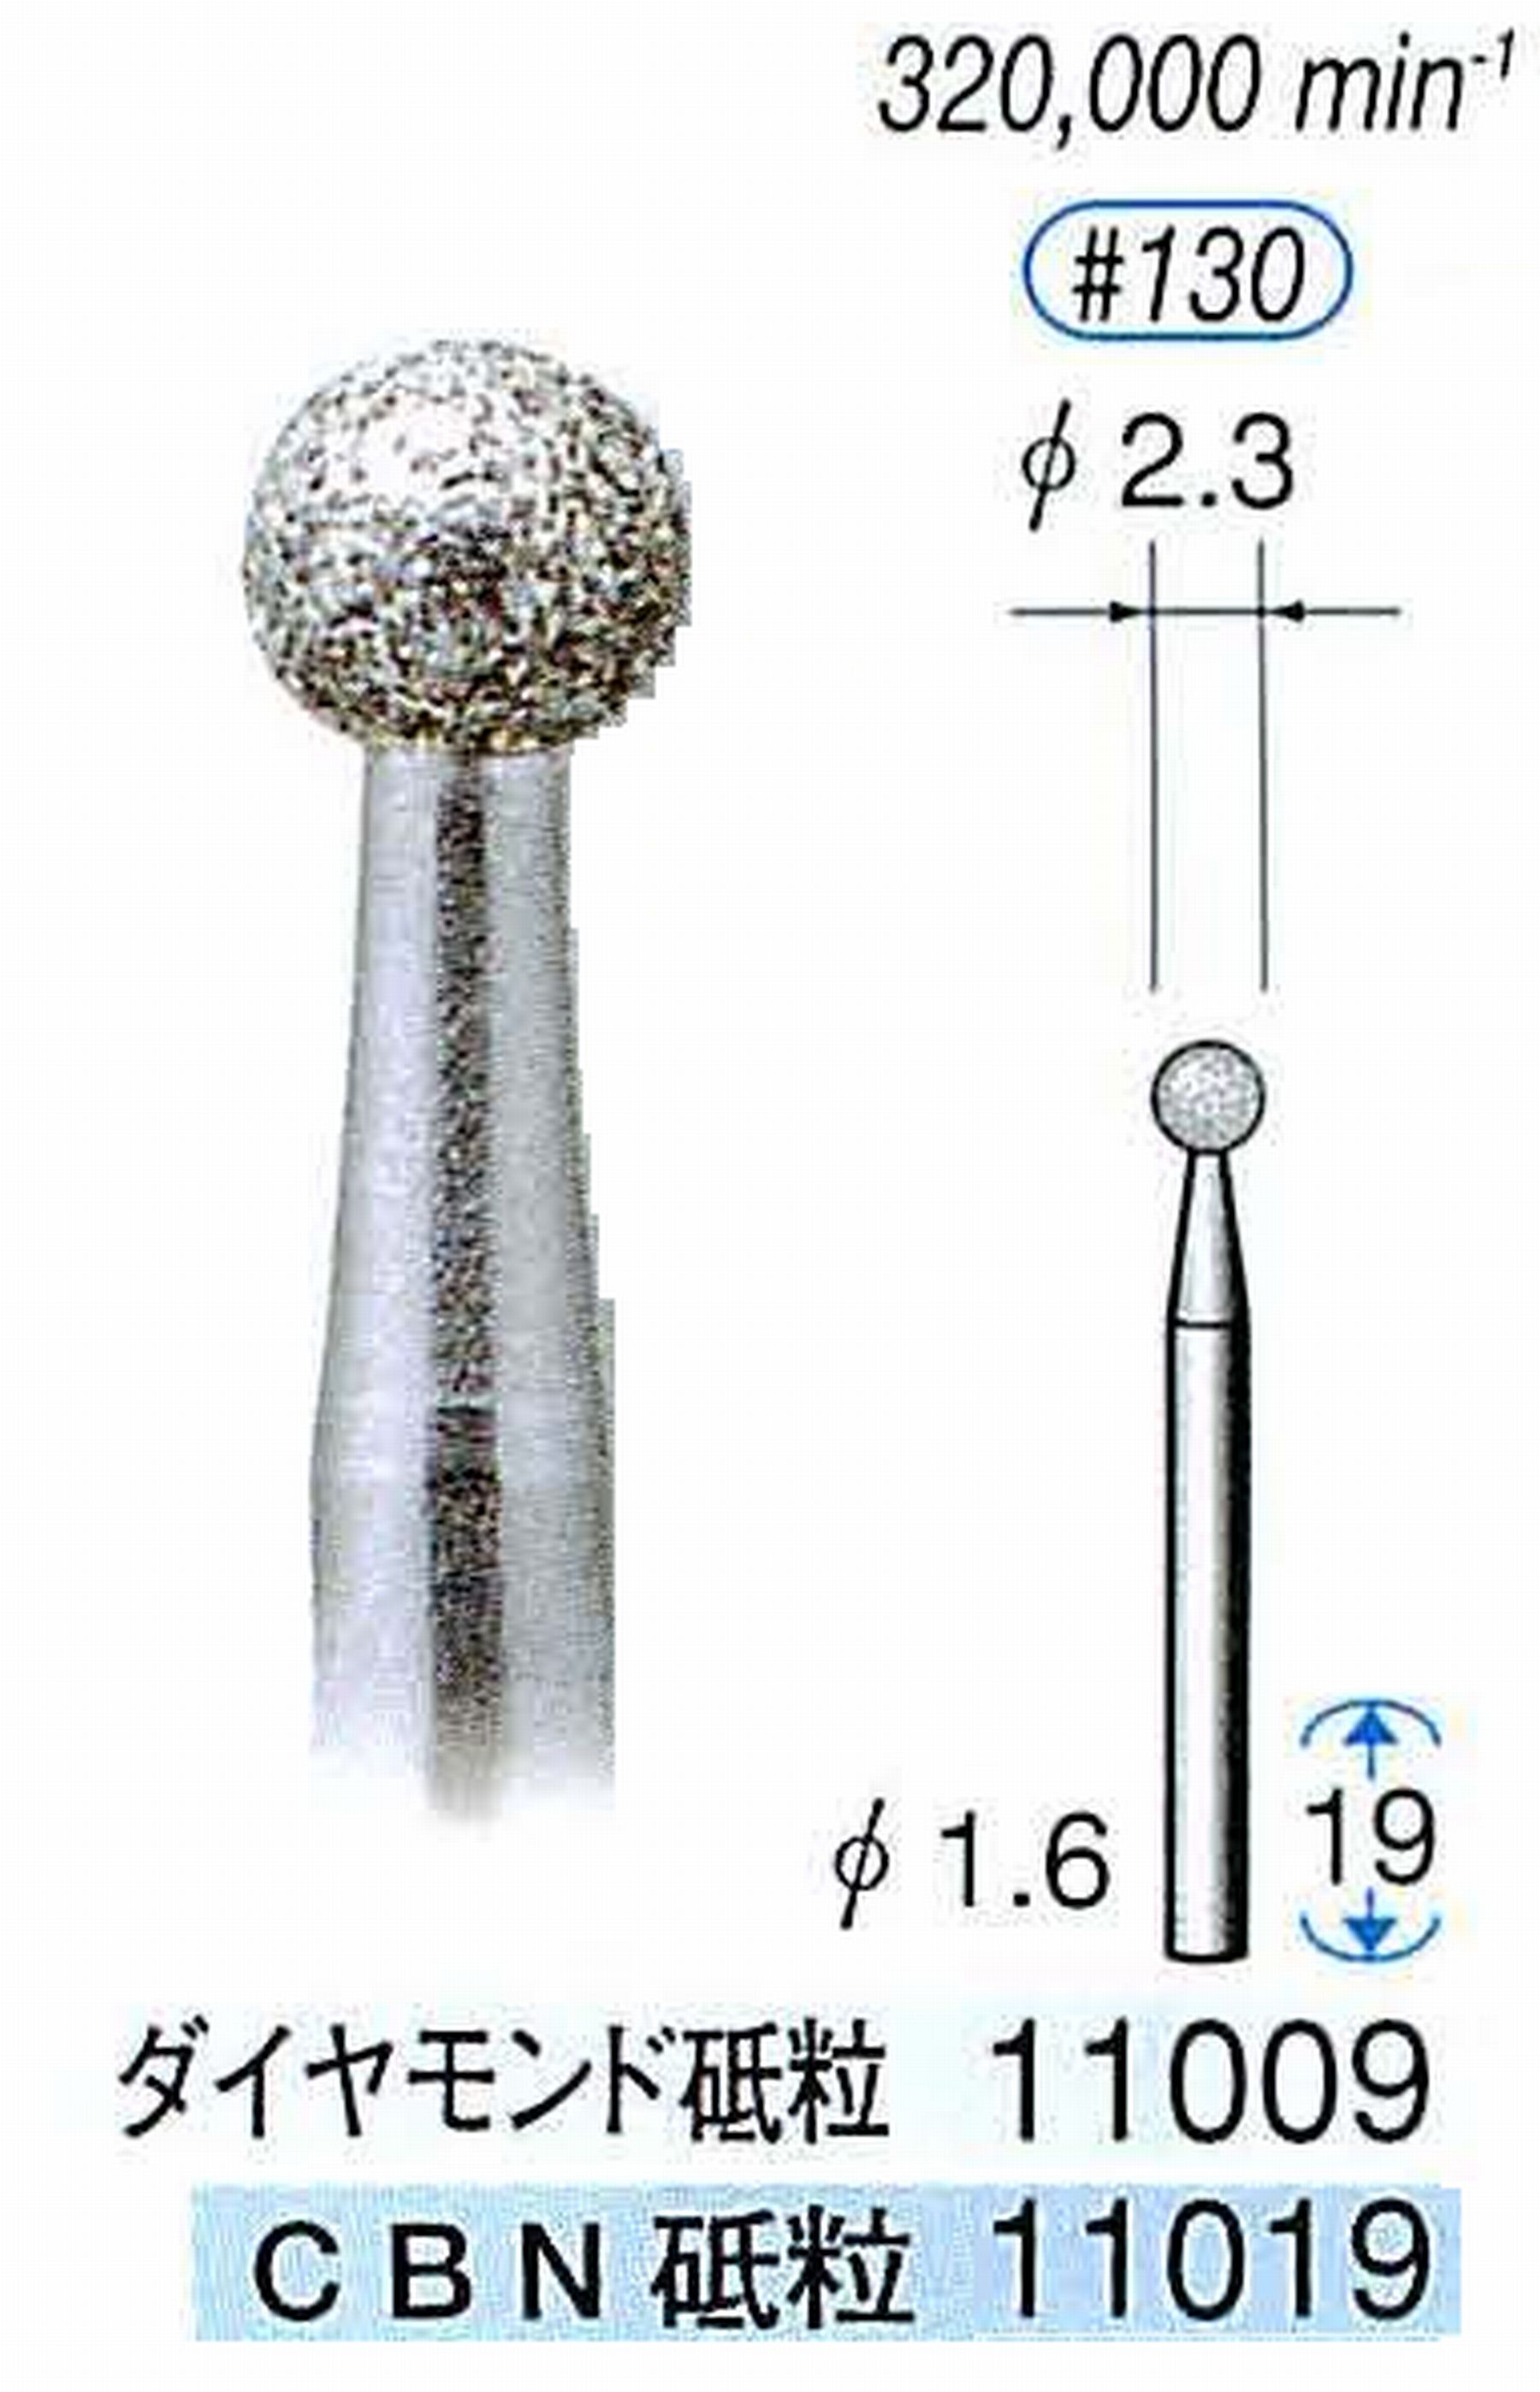 ナカニシ/NAKANISHI 電着ダイヤモンドバー(ミニチュアタイプ)ダイヤモンド砥粒 軸径(シャンク)φ1.6mm 11009